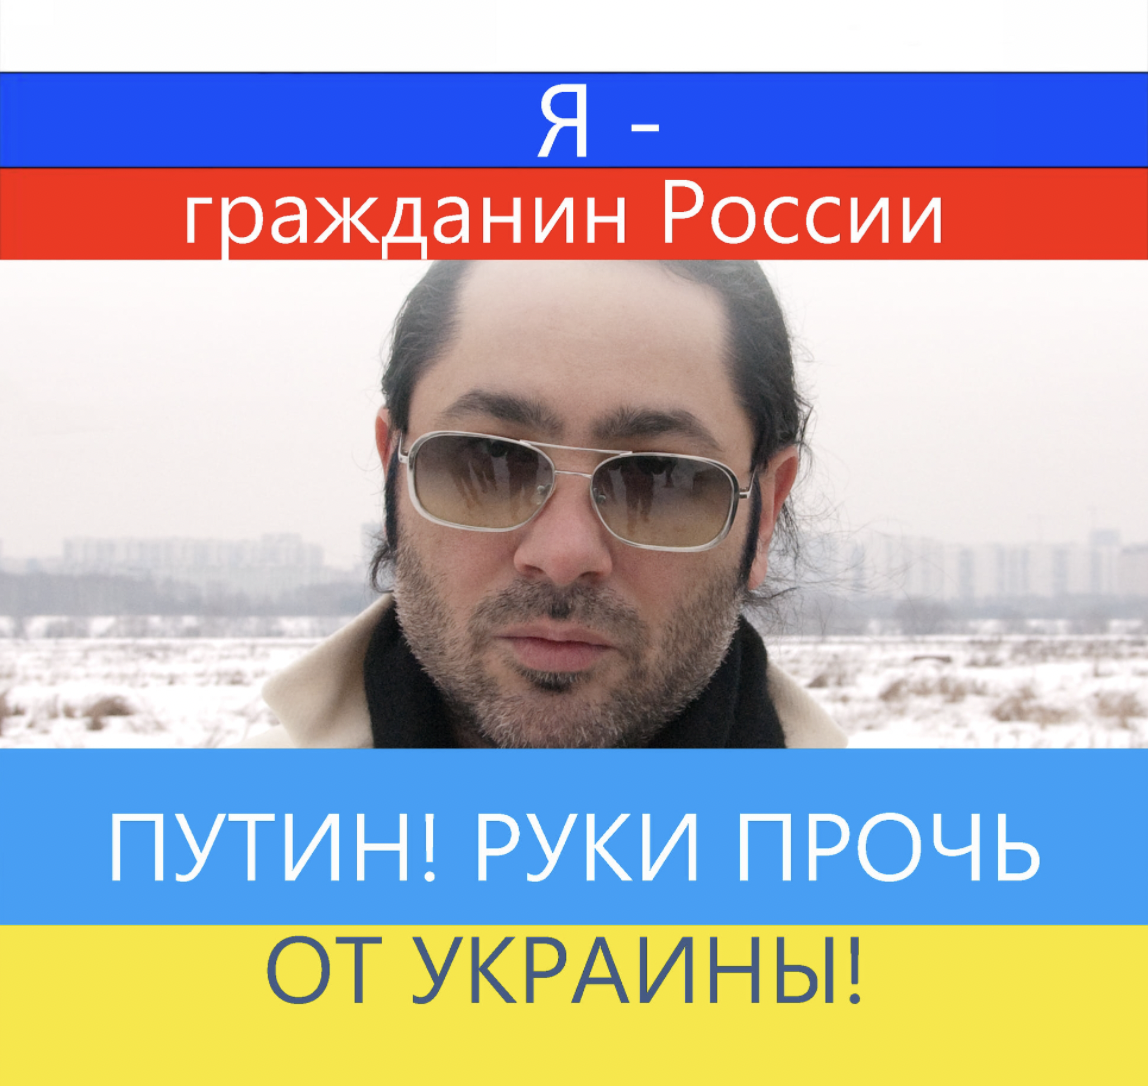 Оппозиционер думает, что в России не может быть майданного сценария, который был в Украине / фото facebook.com/ProfessorLebedinsky